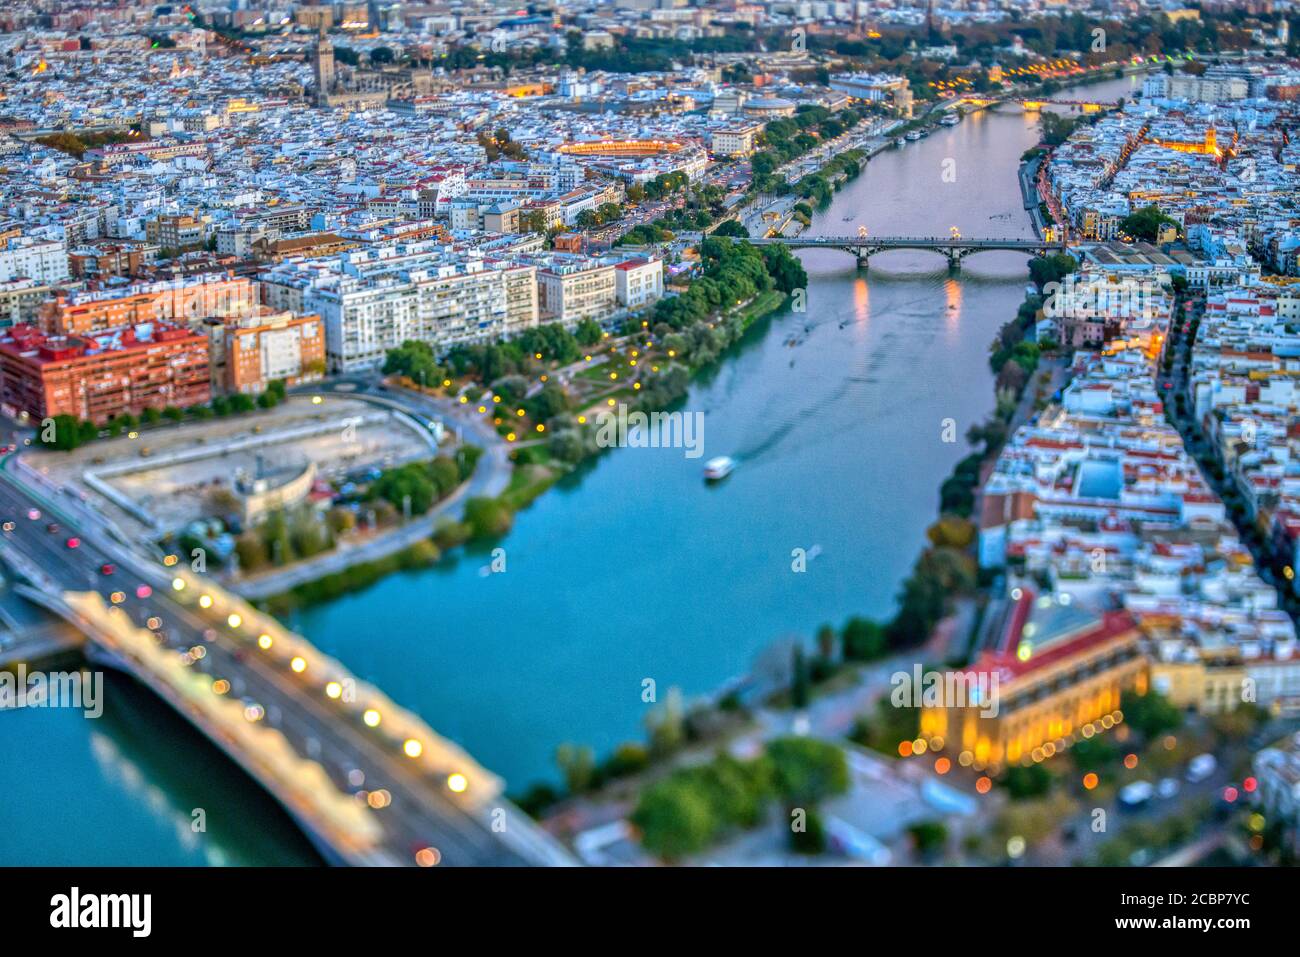 Luftaufnahme der Innenstadt von Sevilla (Spanien). Foto mit einem gekippten Objektiv für eine flachere Schärfentiefe. Stockfoto